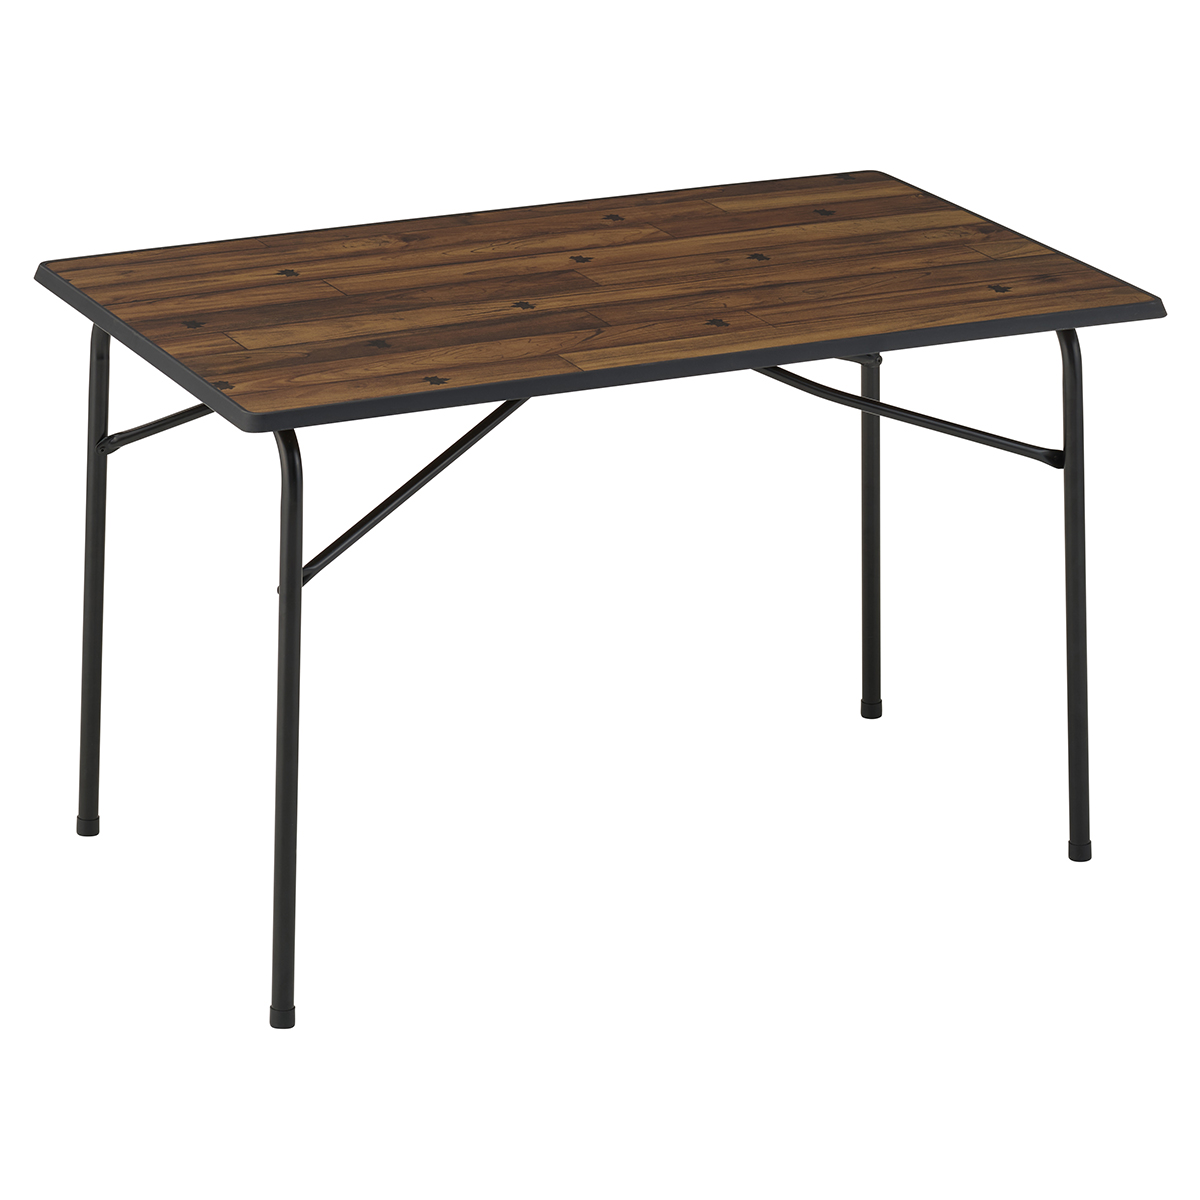 アウトドア テーブル/チェア Tracksleeper ワークアイアン100kテーブル|ギア|家具|テーブル|製品 